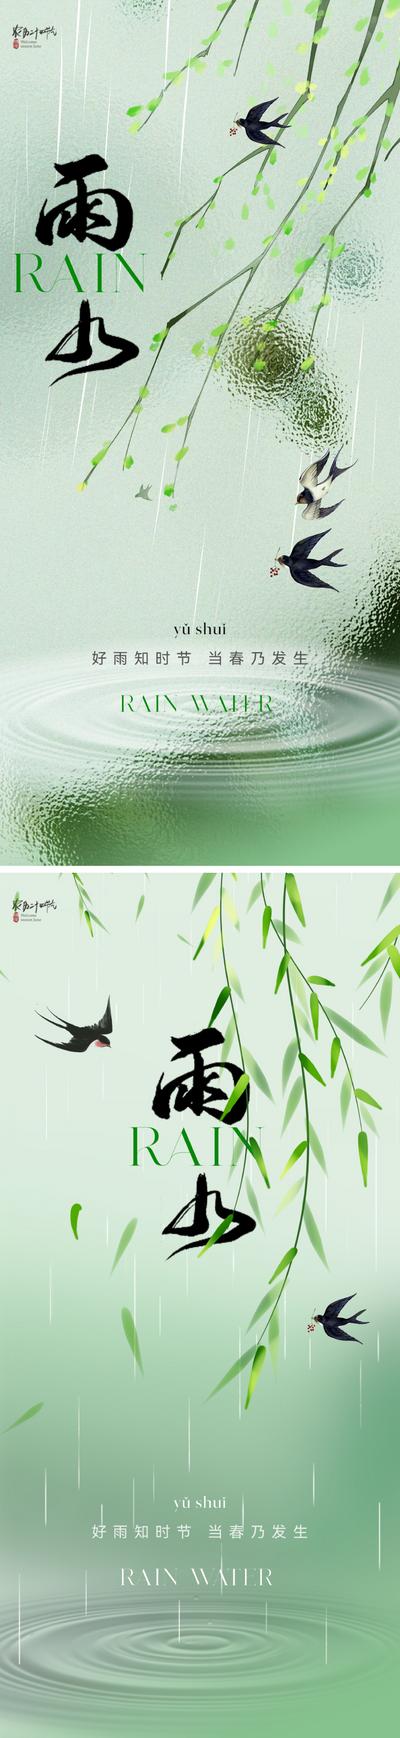 南门网 广告 海报 地产 雨水 节气 中式 清新 柳树 柳叶 燕子 朦胧 弥散 雨滴 水滴 意境 唯美 简约